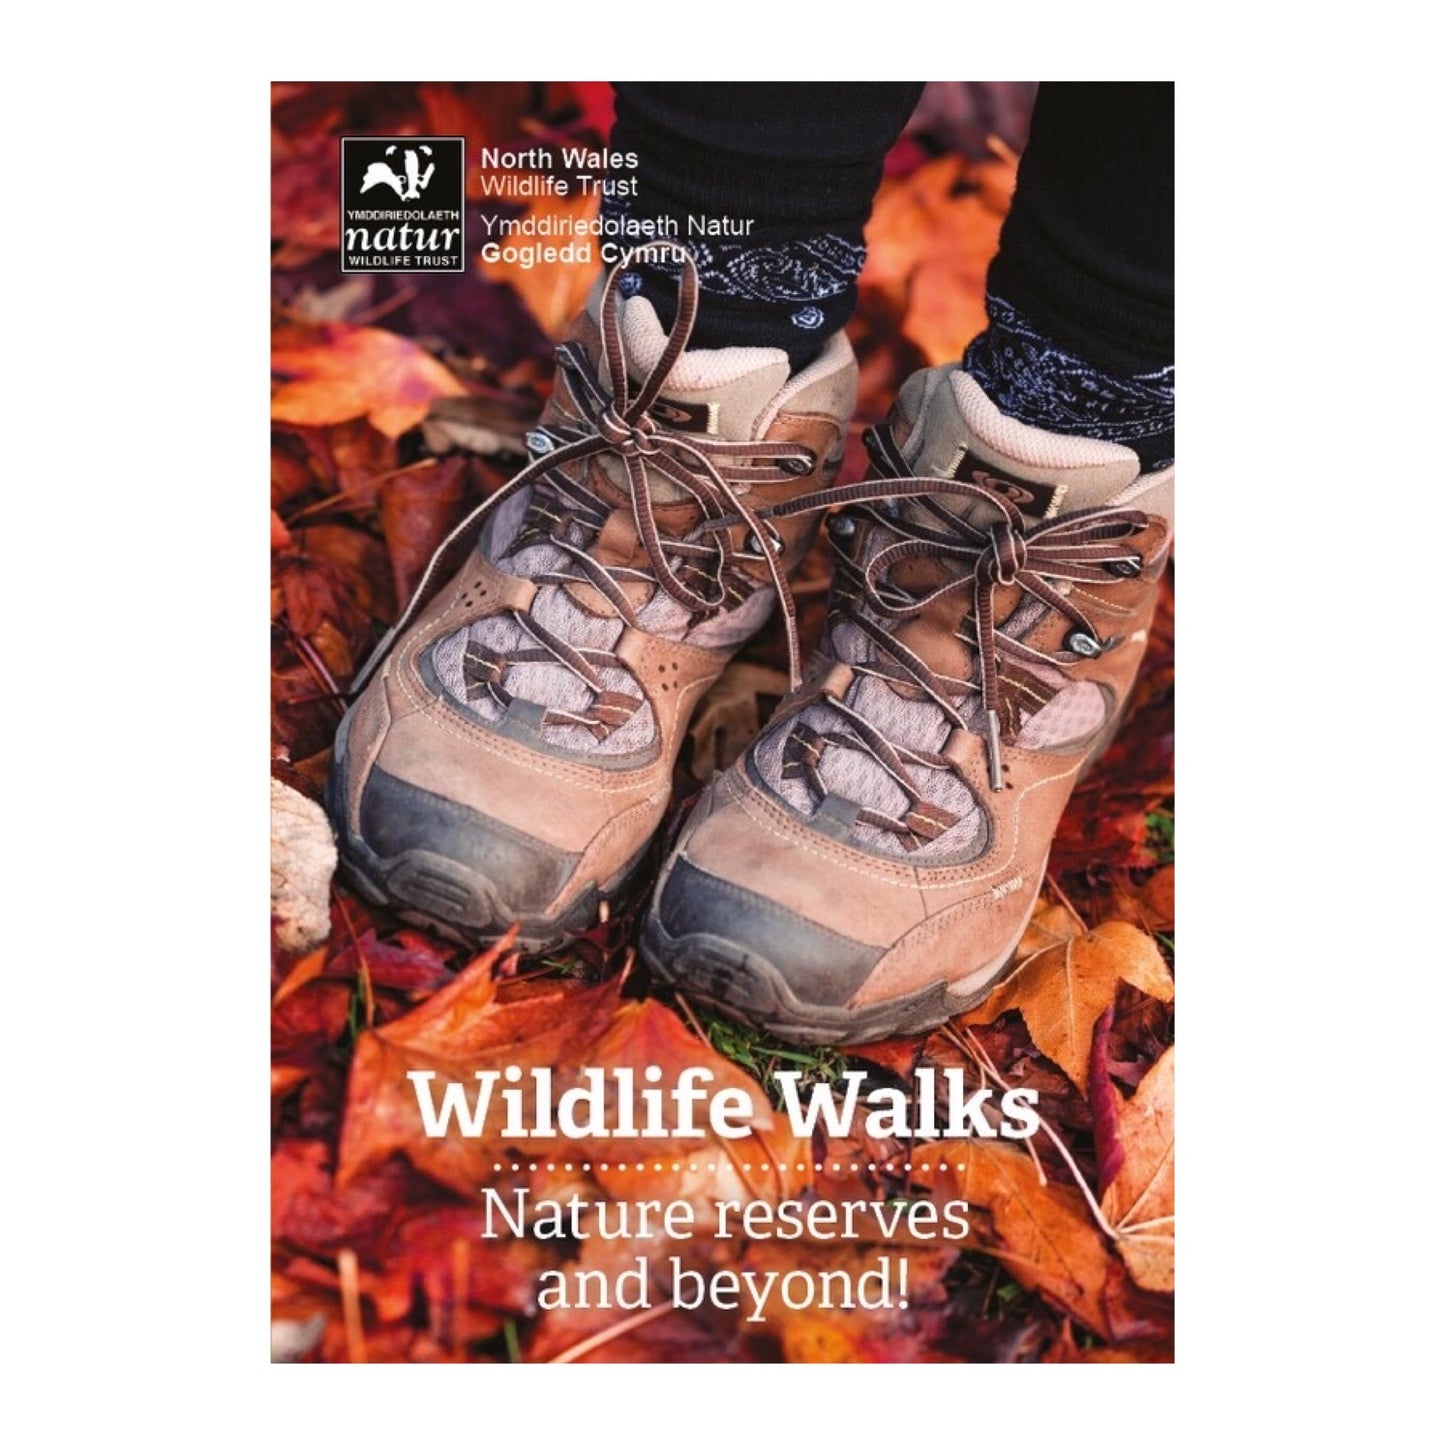 Wildlife Walks / Llwybrau Gwyllt (English or Welsh Version)